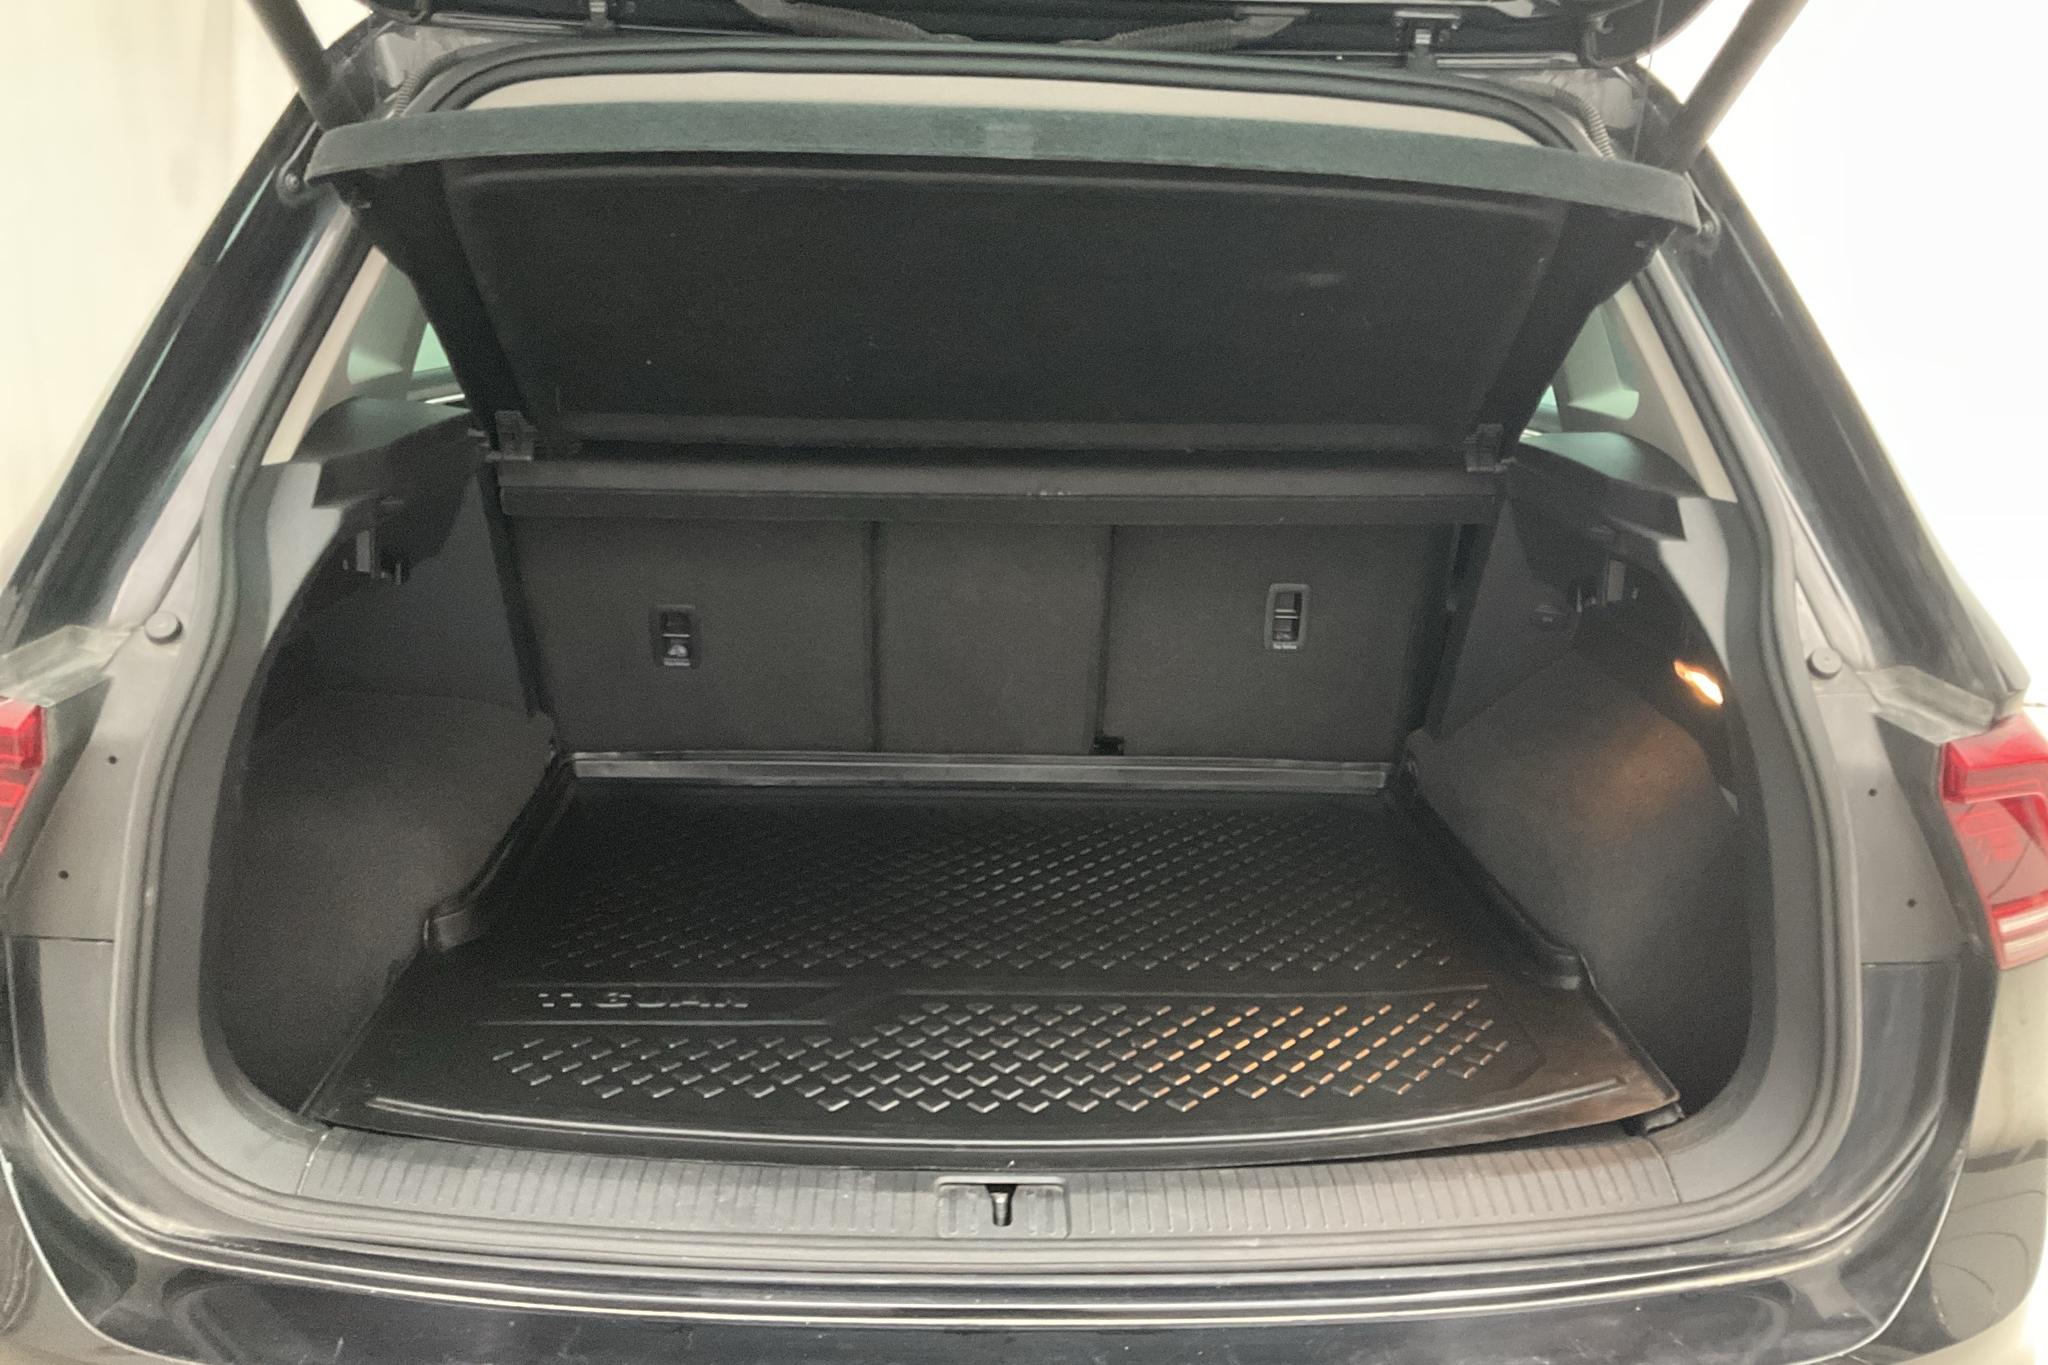 VW Tiguan 2.0 TDI 4MOTION (190hk) - 116 010 km - Automatic - black - 2017